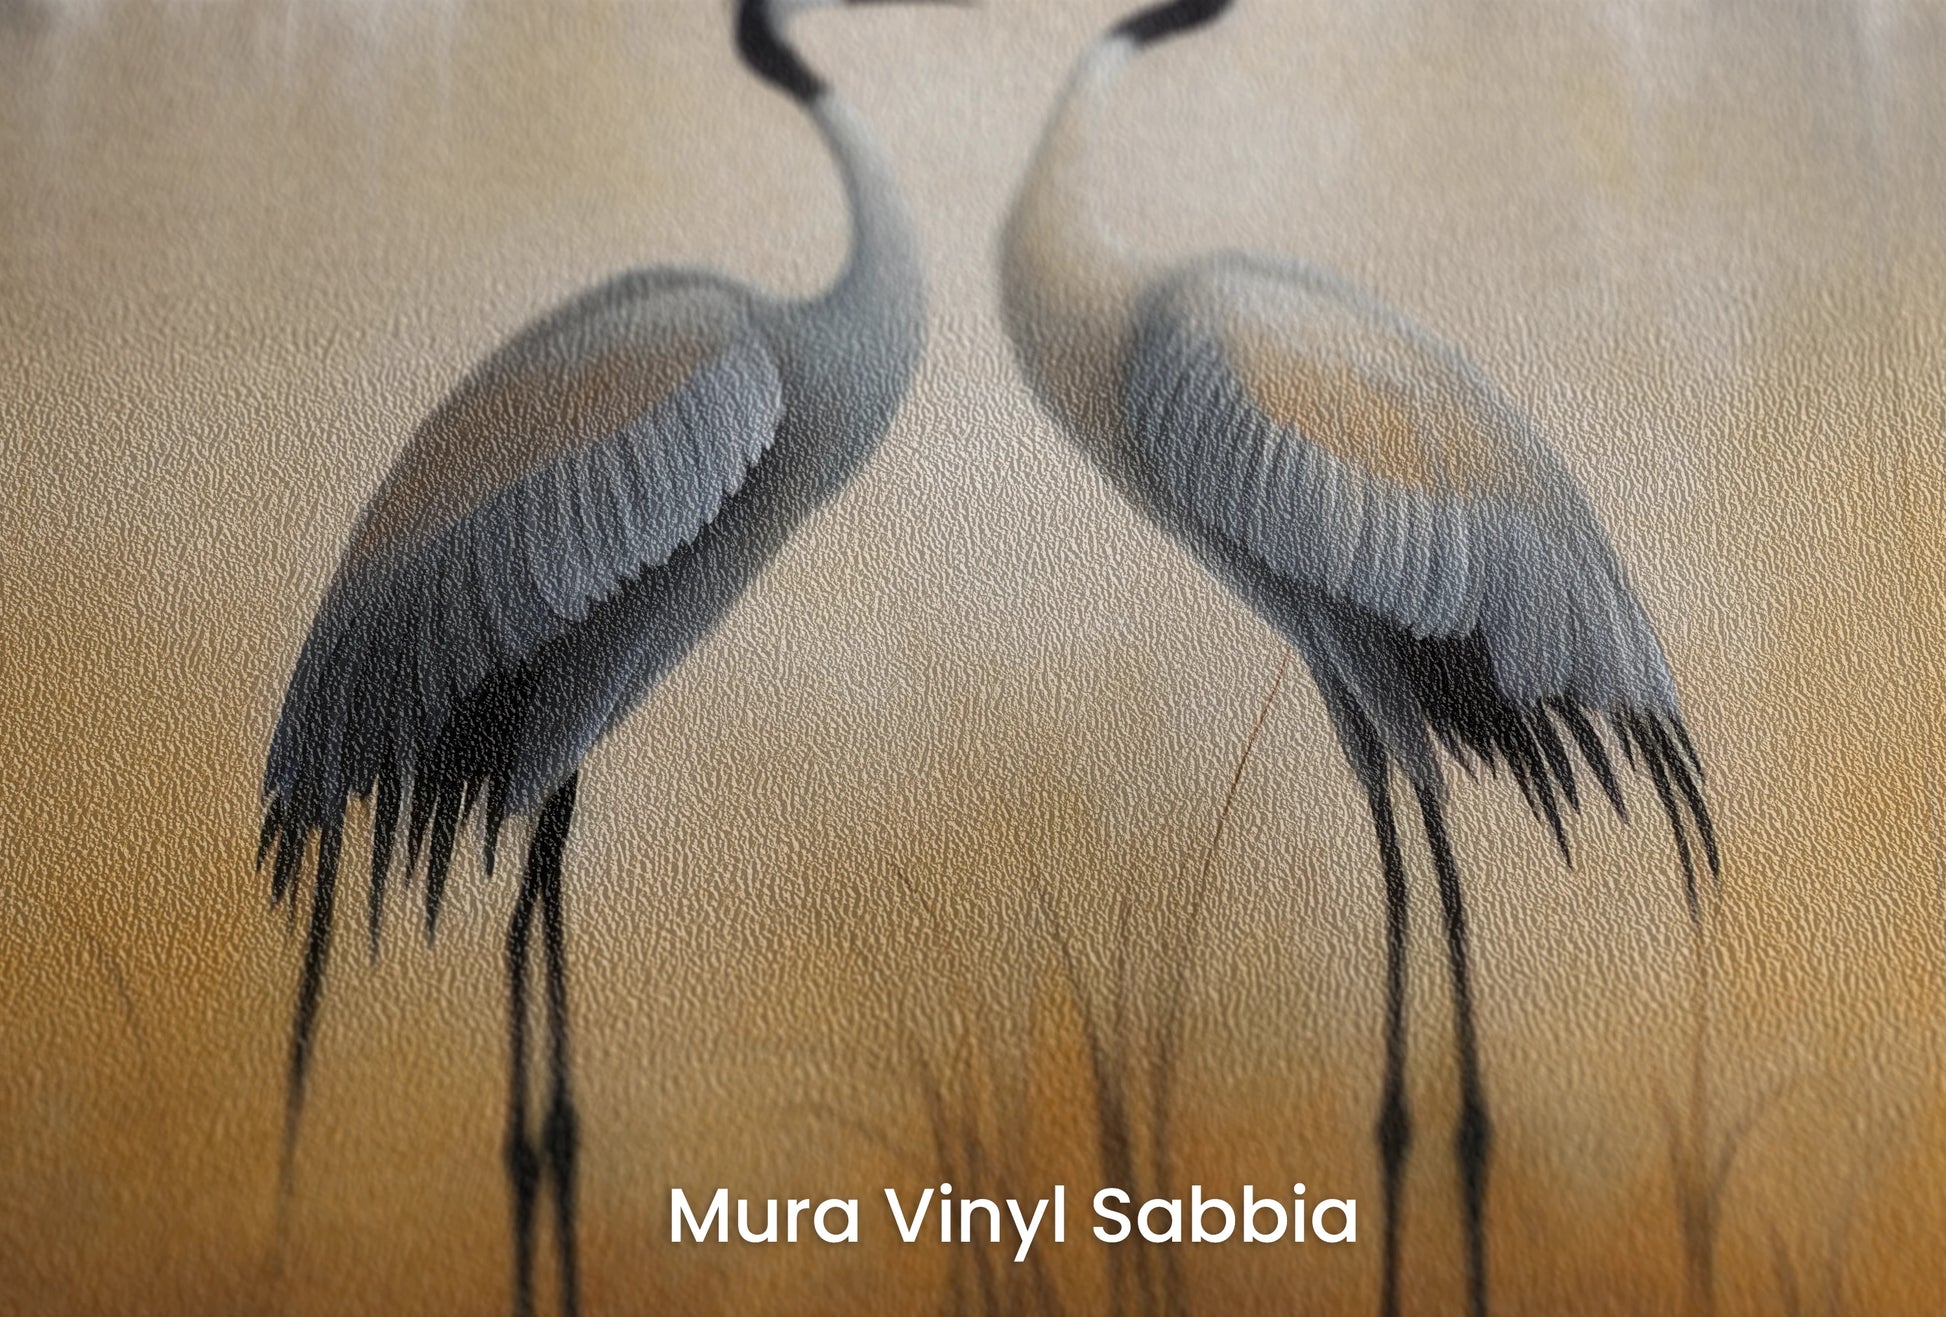 Zbliżenie na artystyczną fototapetę o nazwie Misty Dawn #2 na podłożu Mura Vinyl Sabbia struktura grubego ziarna piasku.